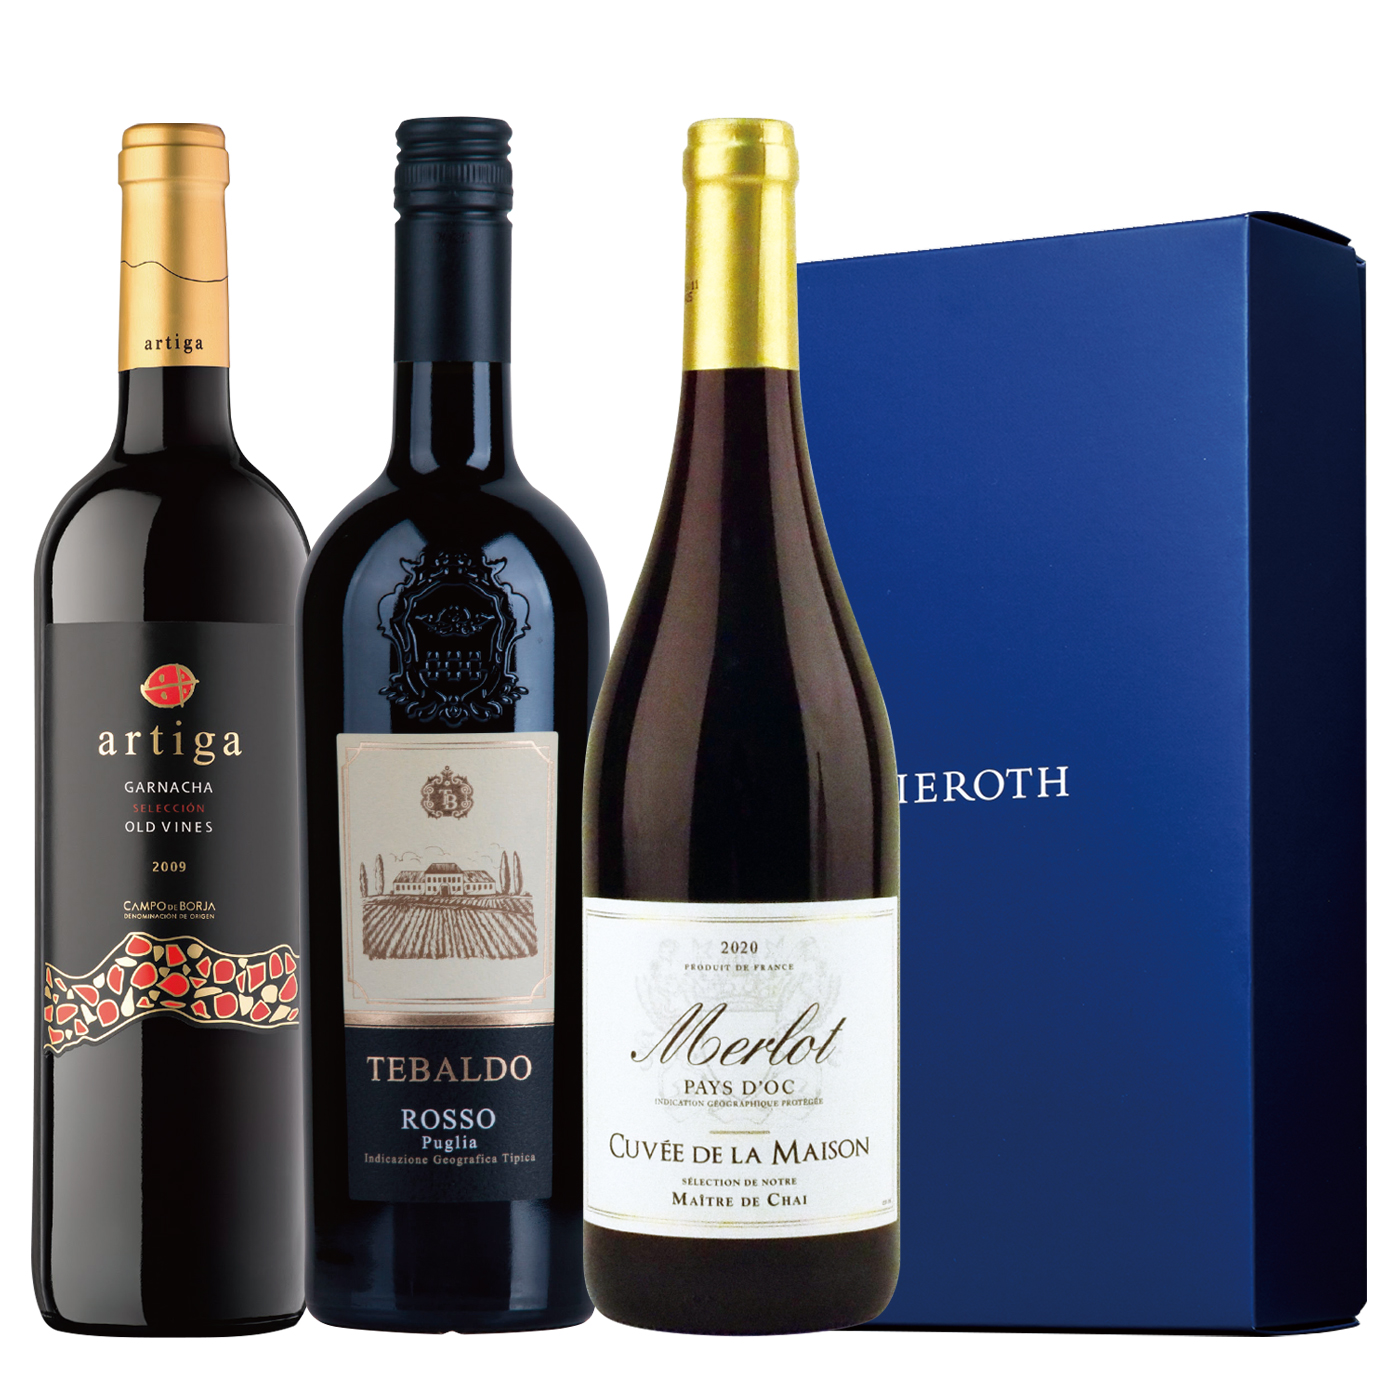 300 スペイン・イタリア・フランス 赤ワイン 3本セット ピーロート・ジャパン ハイエンド・高級ワイン通販